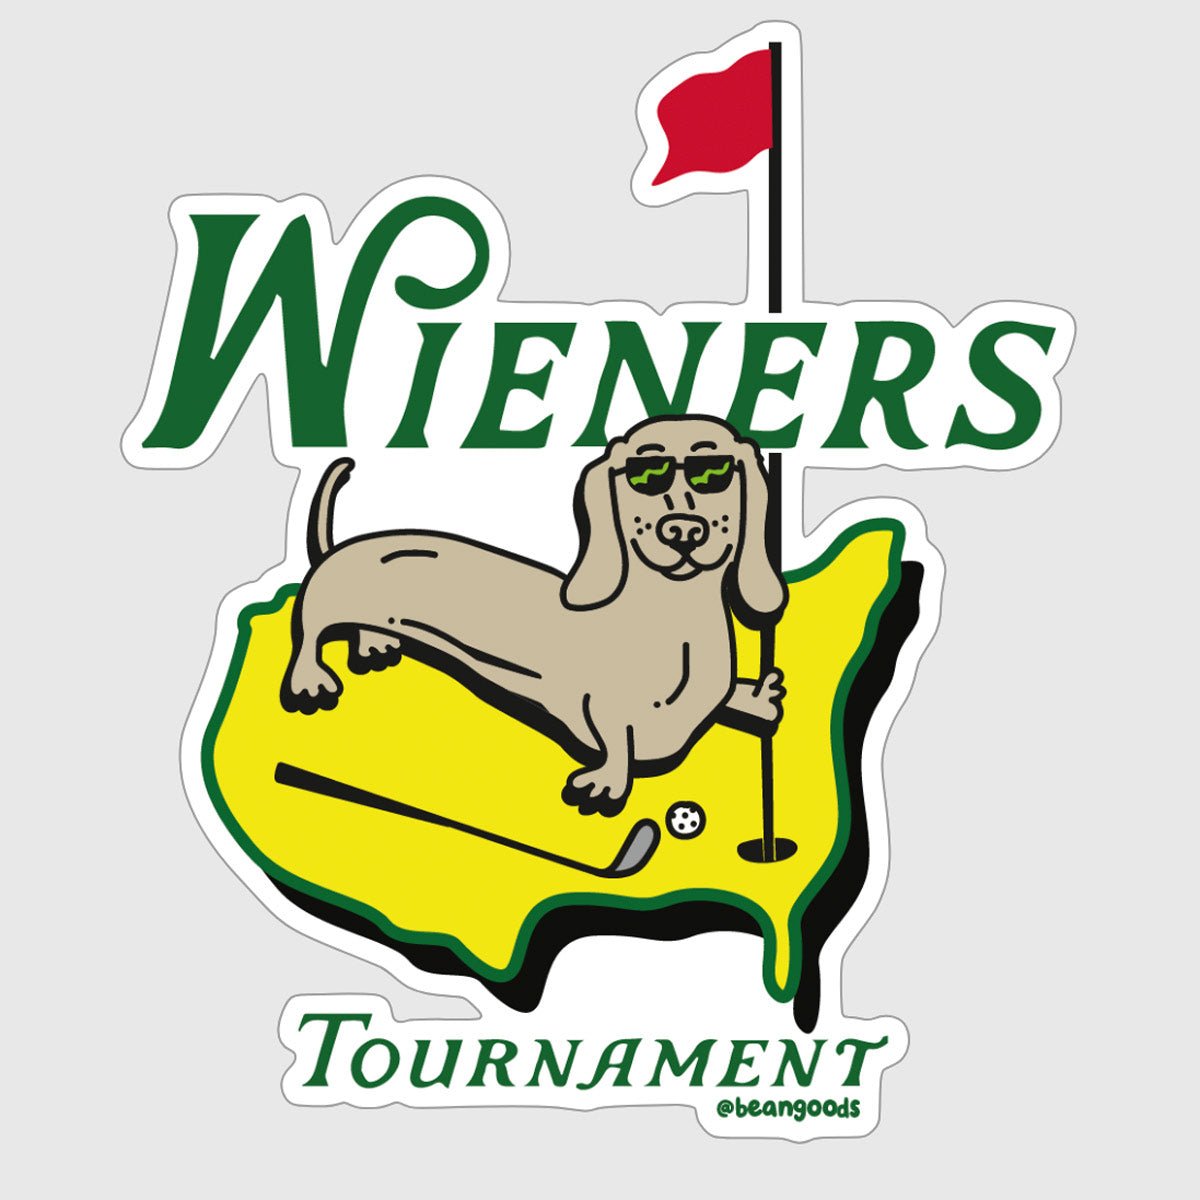 wieners golf tournament sticker - bean goods